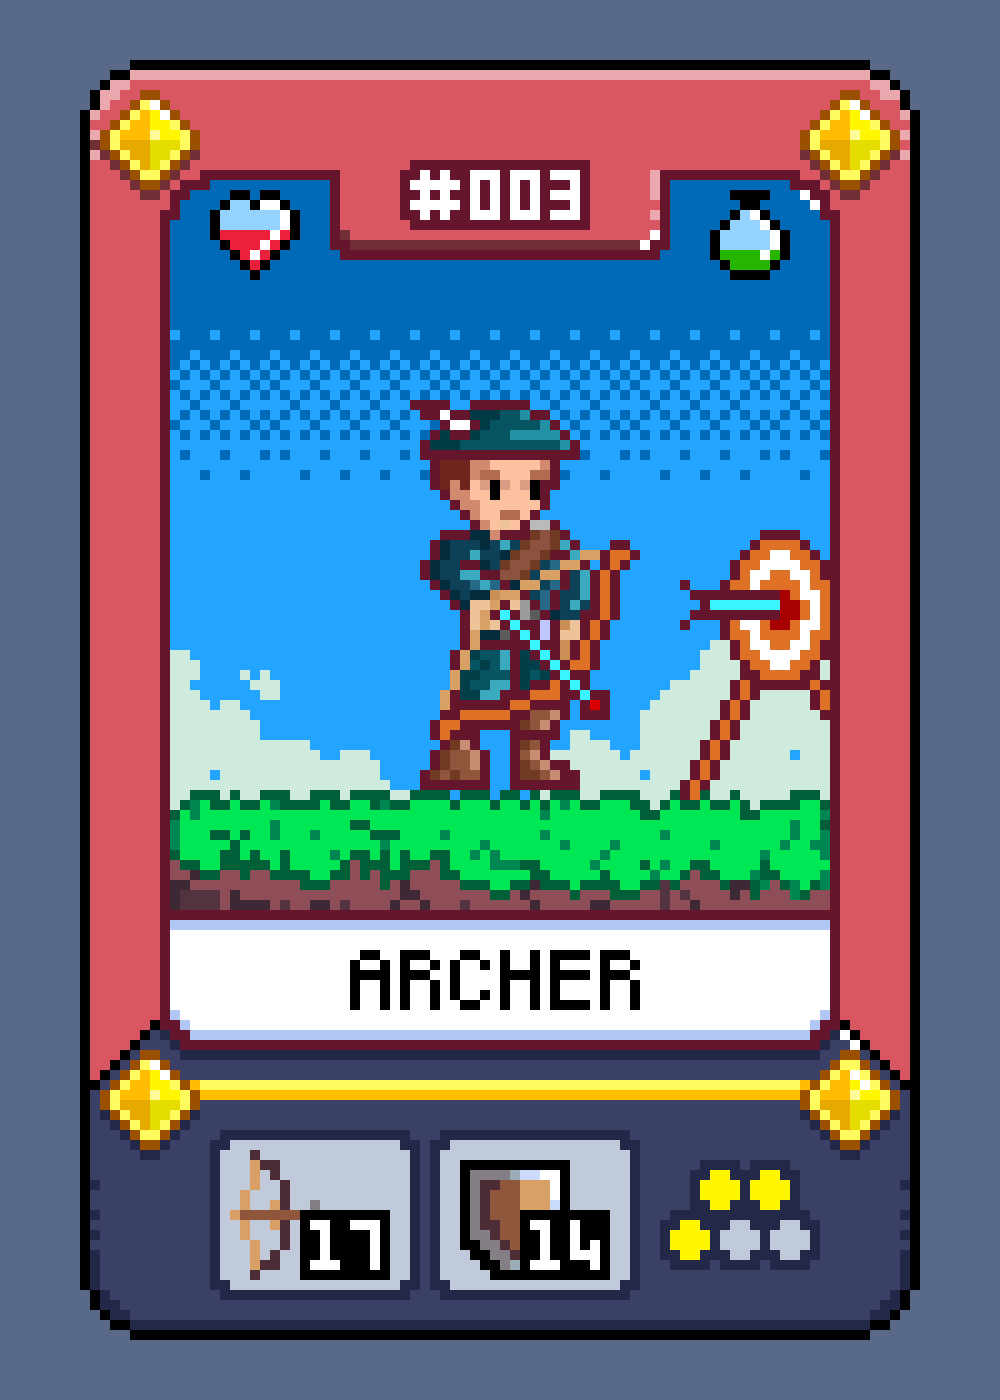 #003 Archer